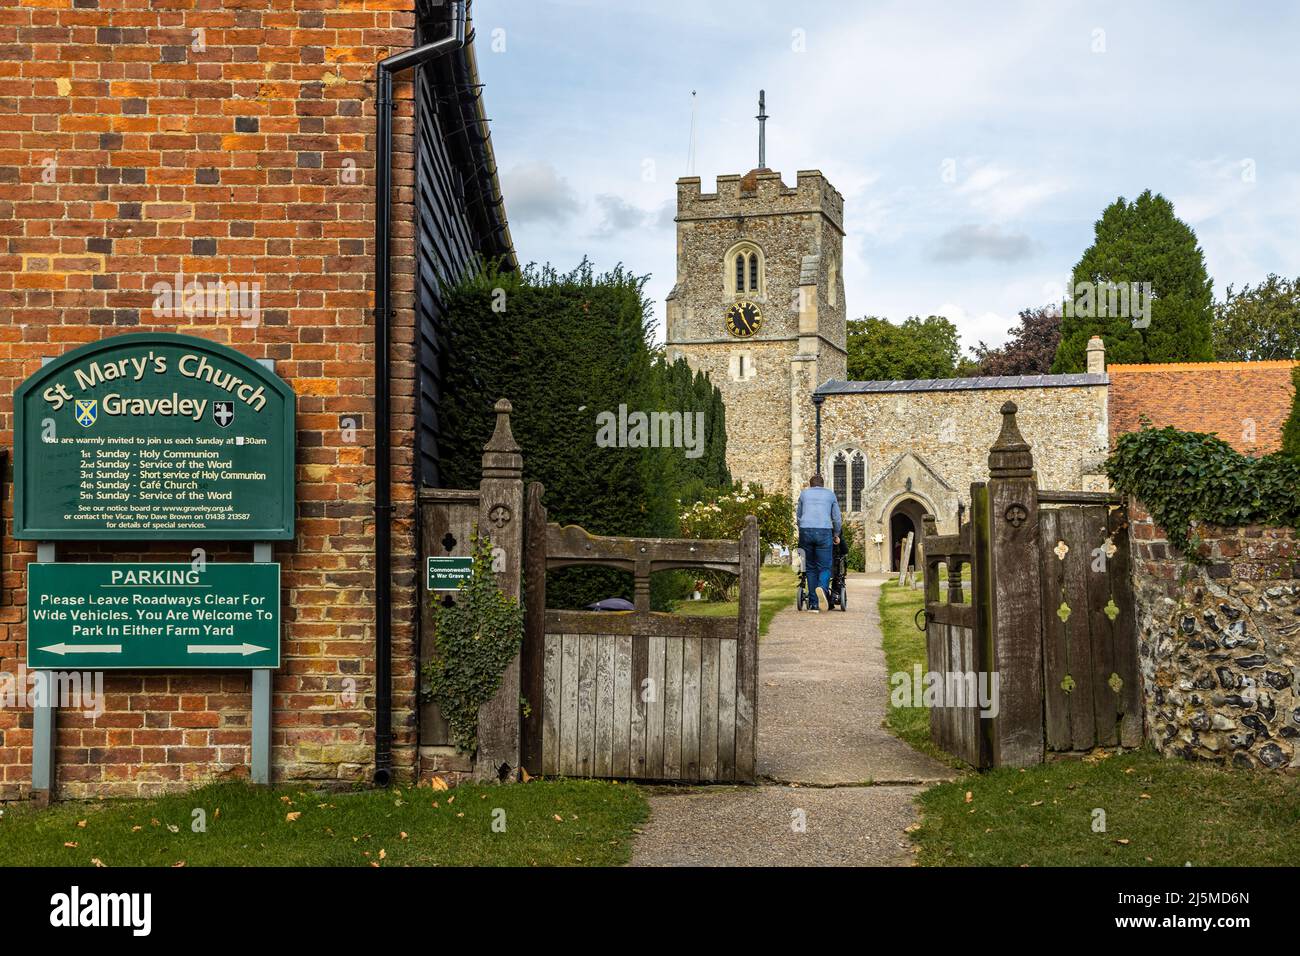 St. Mary's Church Graveley, am frühen Morgen Sonntagsgottesdienst mit Gemeindemitglieder Eingabe, Hertfordshire England Großbritannien Stockfoto